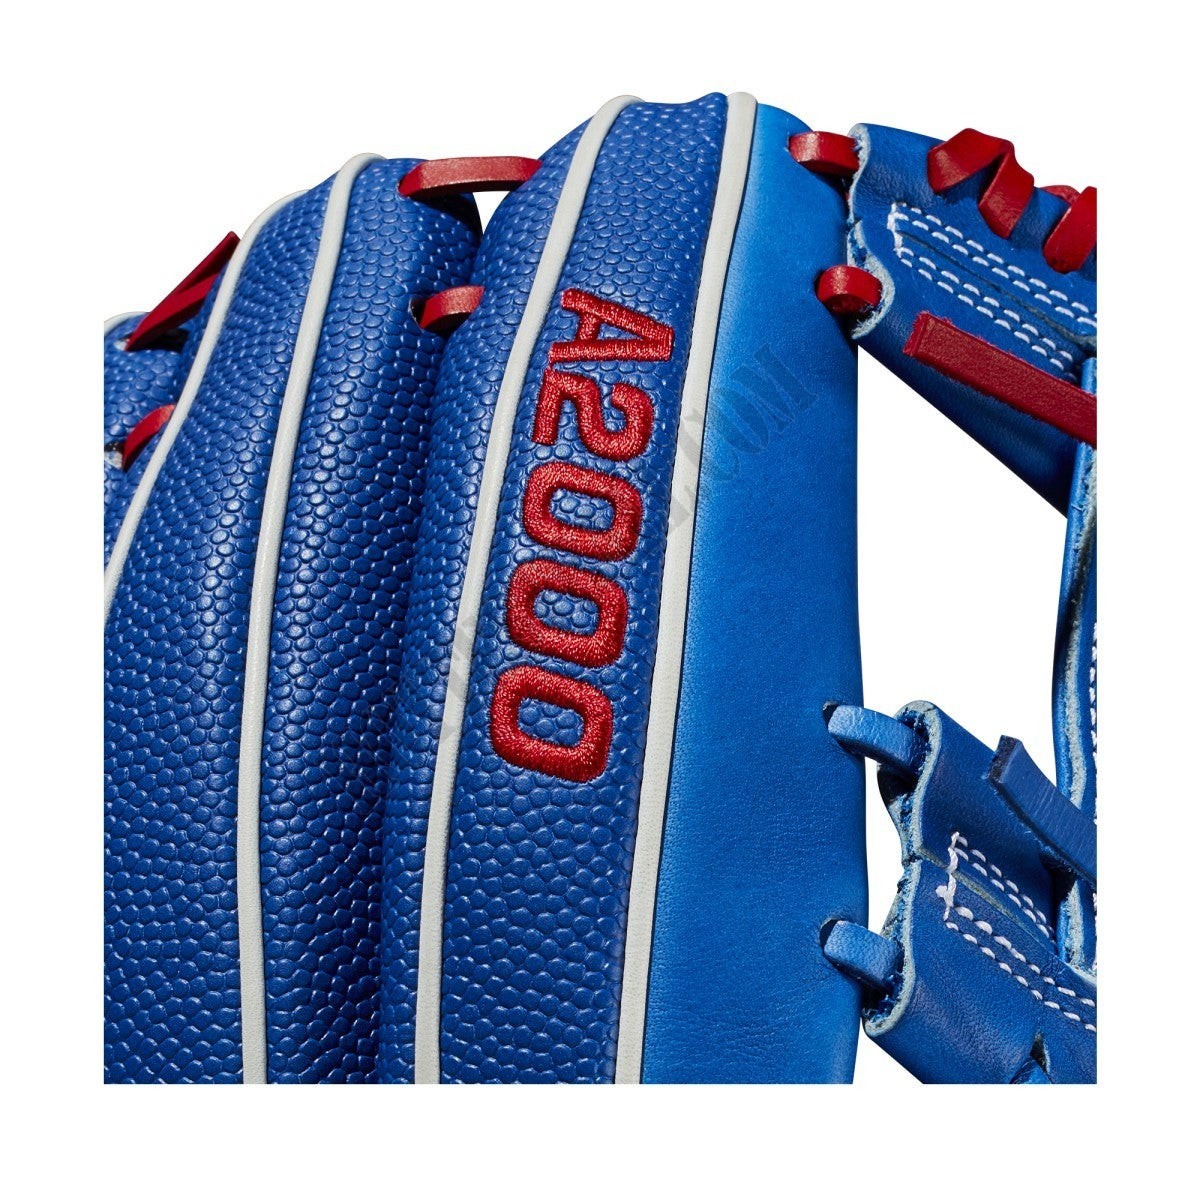 2021 A2000 VG27 GM 12.25" Infield Baseball Glove ● Wilson Promotions - -6